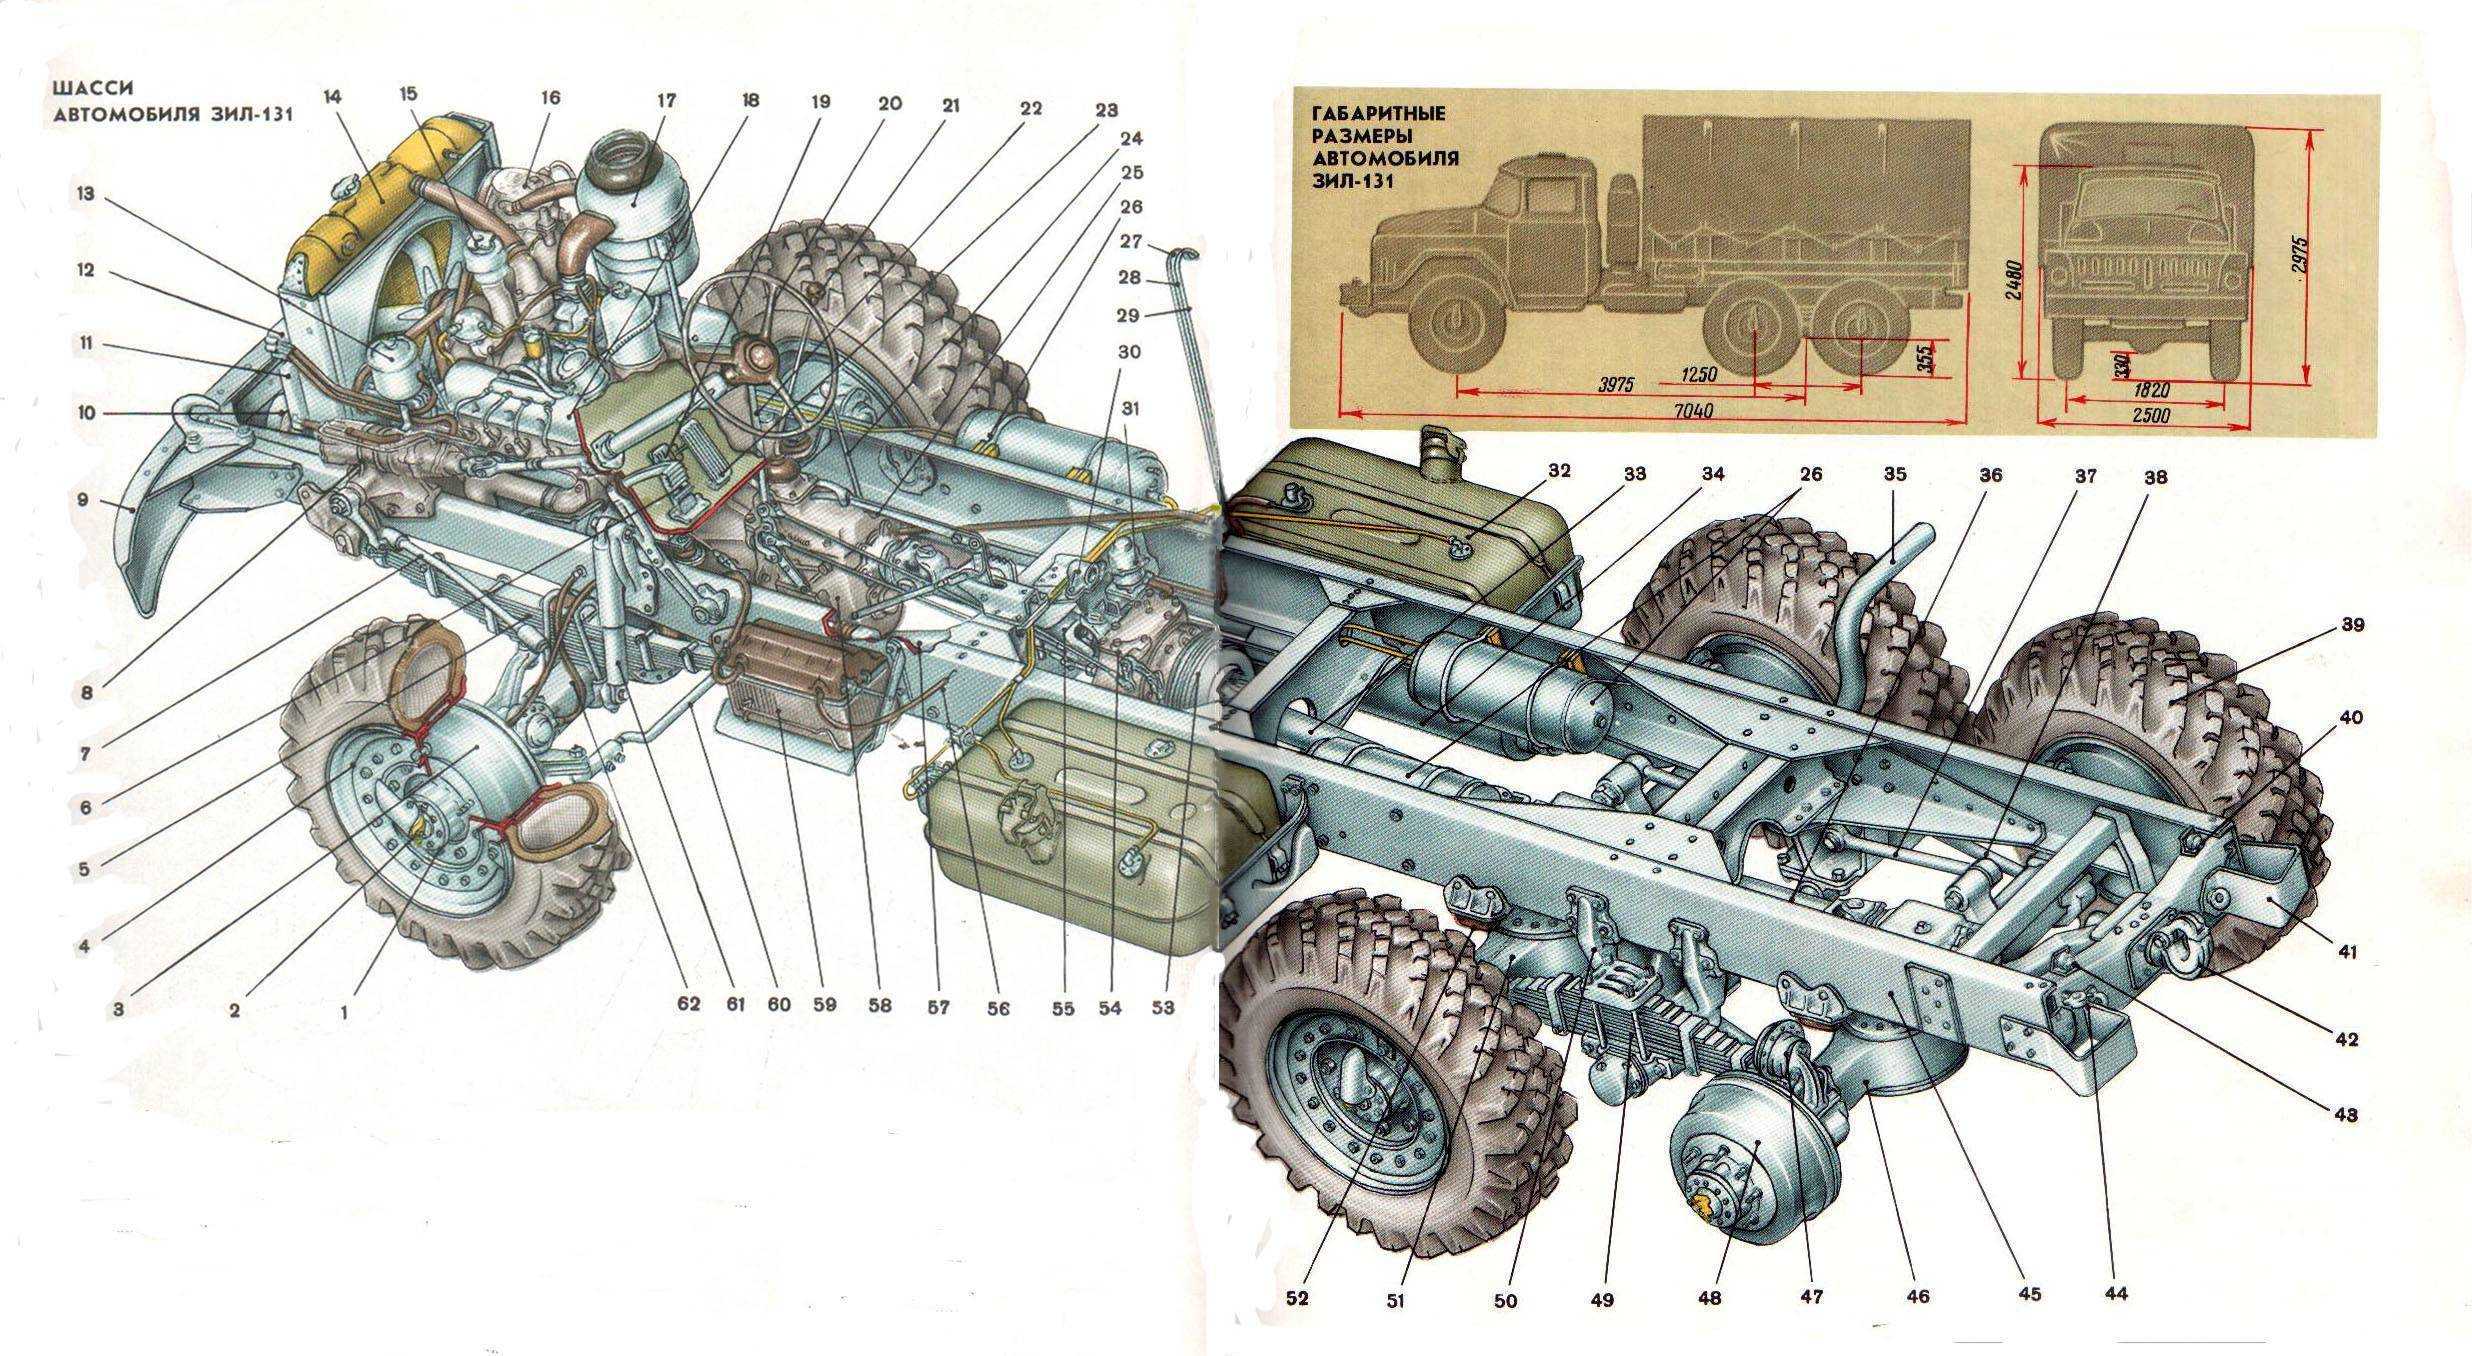 Газ-53 технические характеристики: двигатель, трансмиссия, тормоза